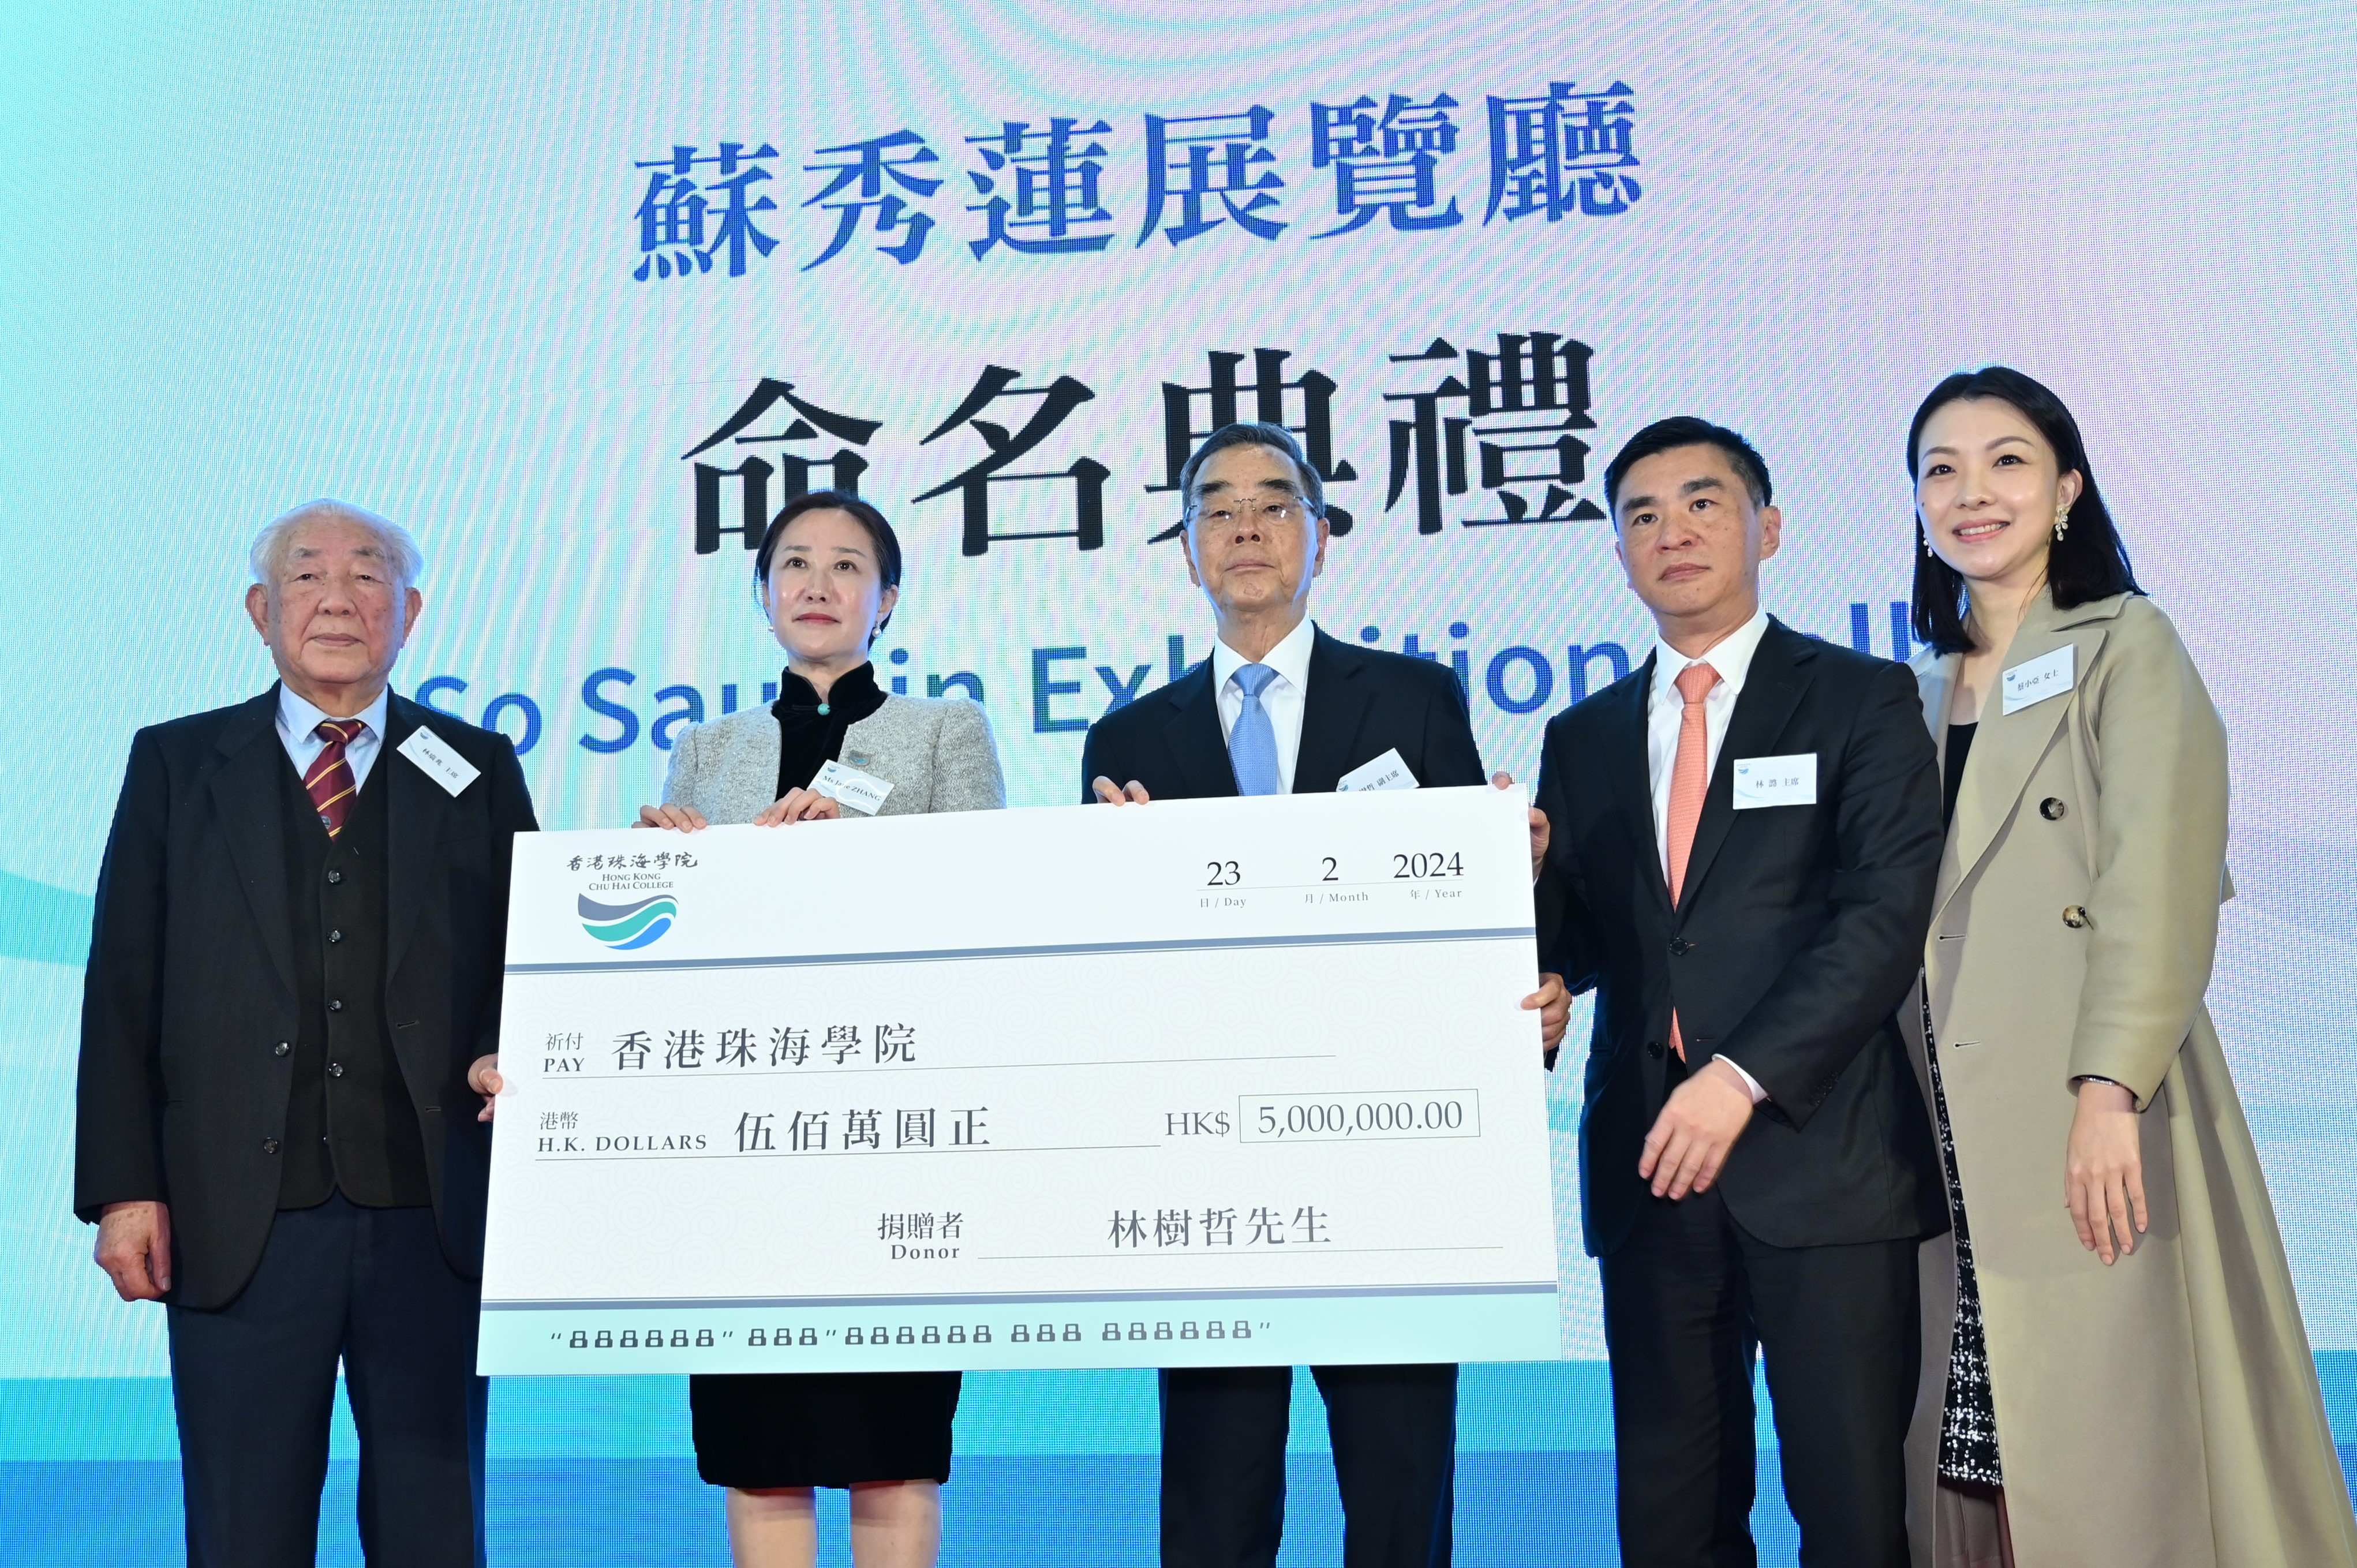 香港珠海學院校董會副主席林樹哲先生（右三）慷慨捐贈港幣500萬元予學院發展之用，由林廣兆主席（左一）和ZHANG Jane副校長（左二）代為接收支票。.JPG